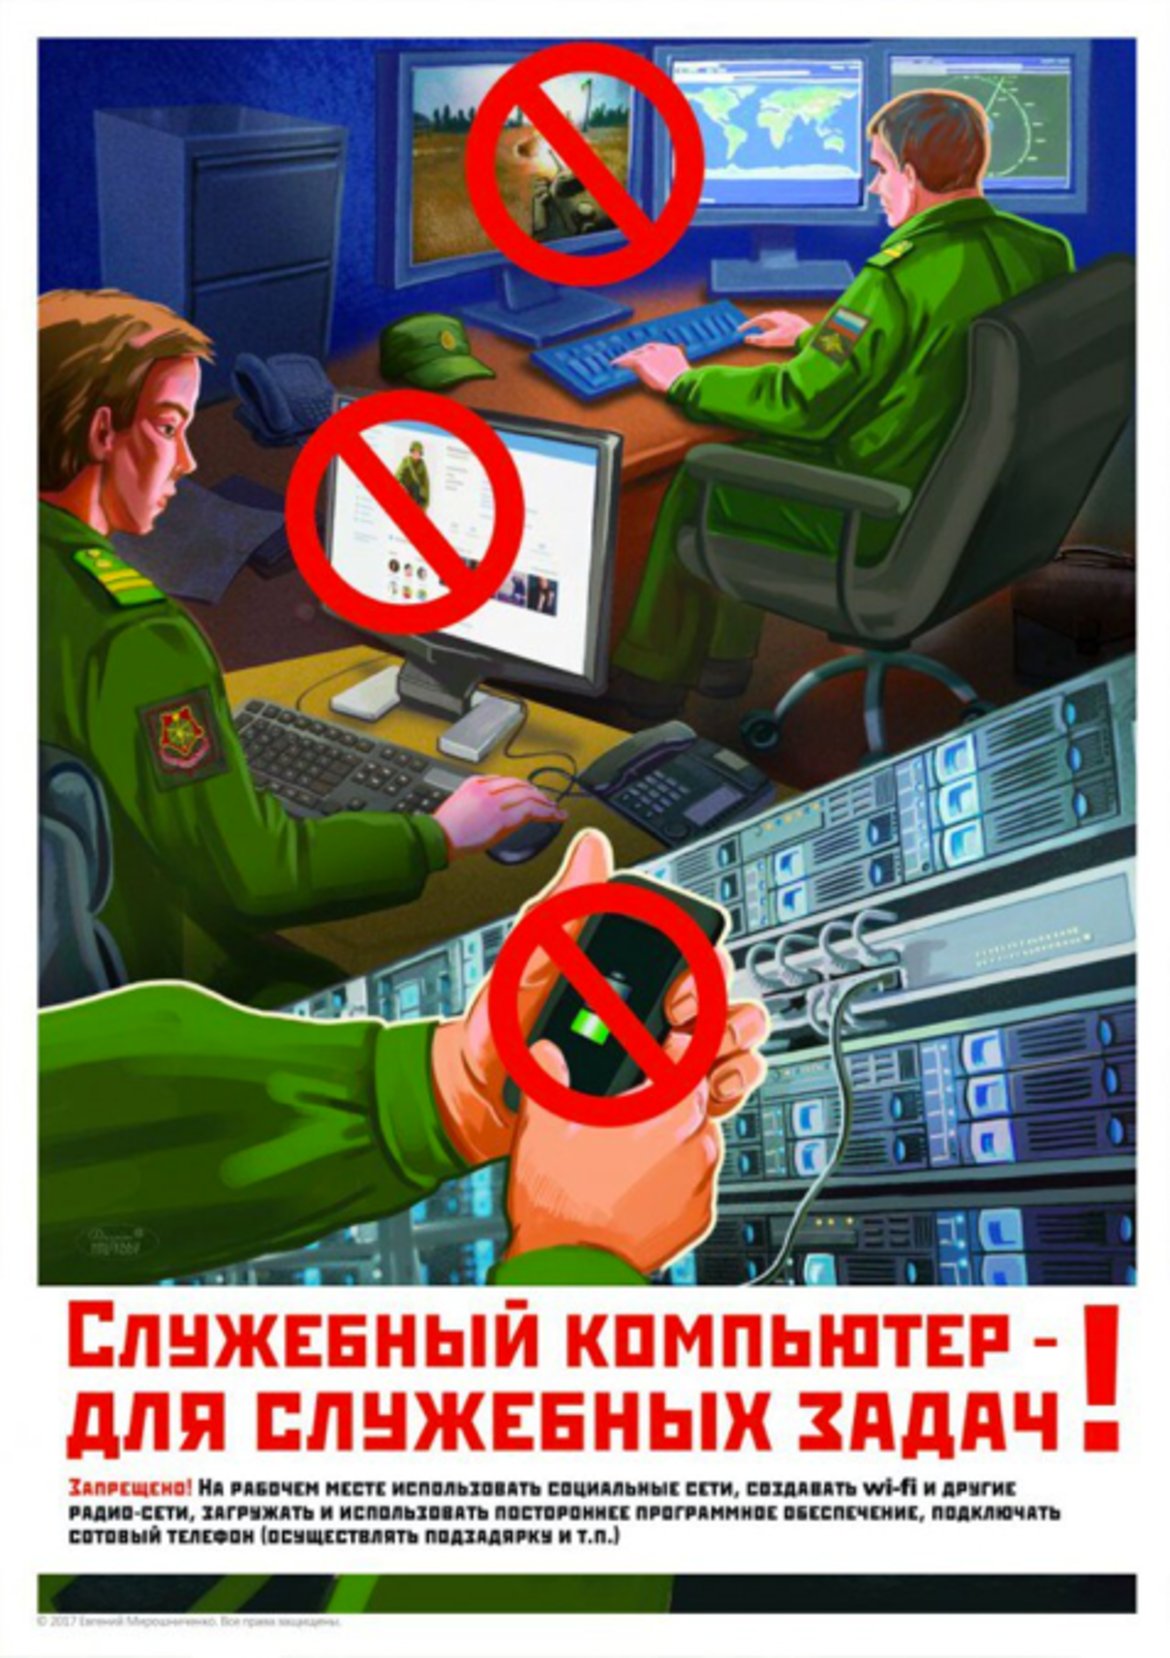 5. "Служебният компютър е само за работа!"

Този плакат предупреждава за опасностите, които използването на социални медии или дори за зареждане на телефон от служебния компютър крие. Не се допускат игри, определени сайтове или зареждане на мобилни устройства с USB кабел. Изобразеният телефон изглежда е iPhone, което предполага, че електрониката от базирана в САЩ компания може и да не е безопасна.